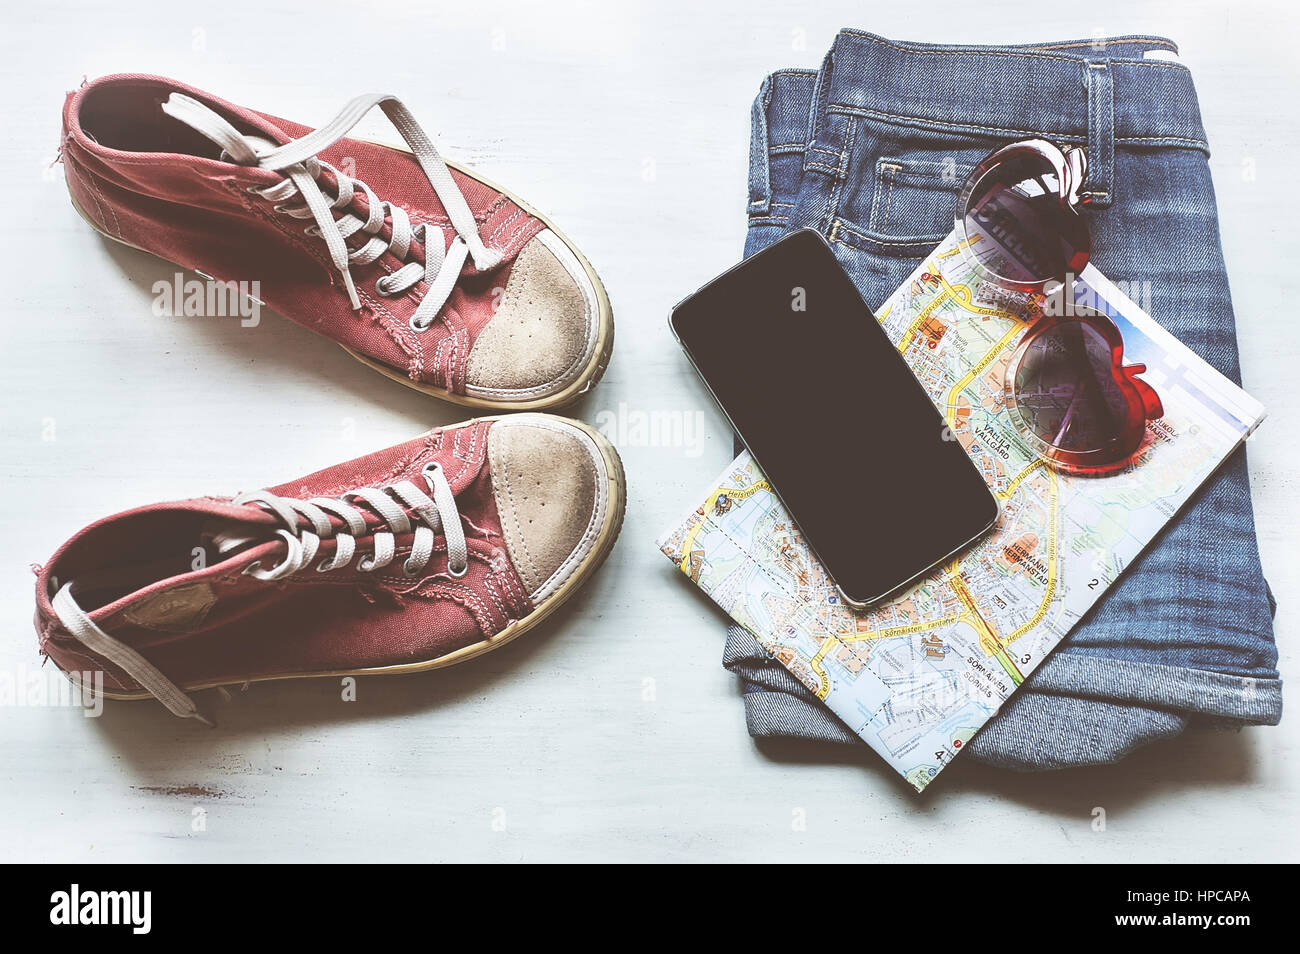 Kleidung & Zubehör: Hipster Turnschuhe, Jeans, kariertes Hemd, Cowboy Gürtel, Telefon mit Kopfhörern auf hölzernen Hintergrund. Reisen-Konzept Stockfoto